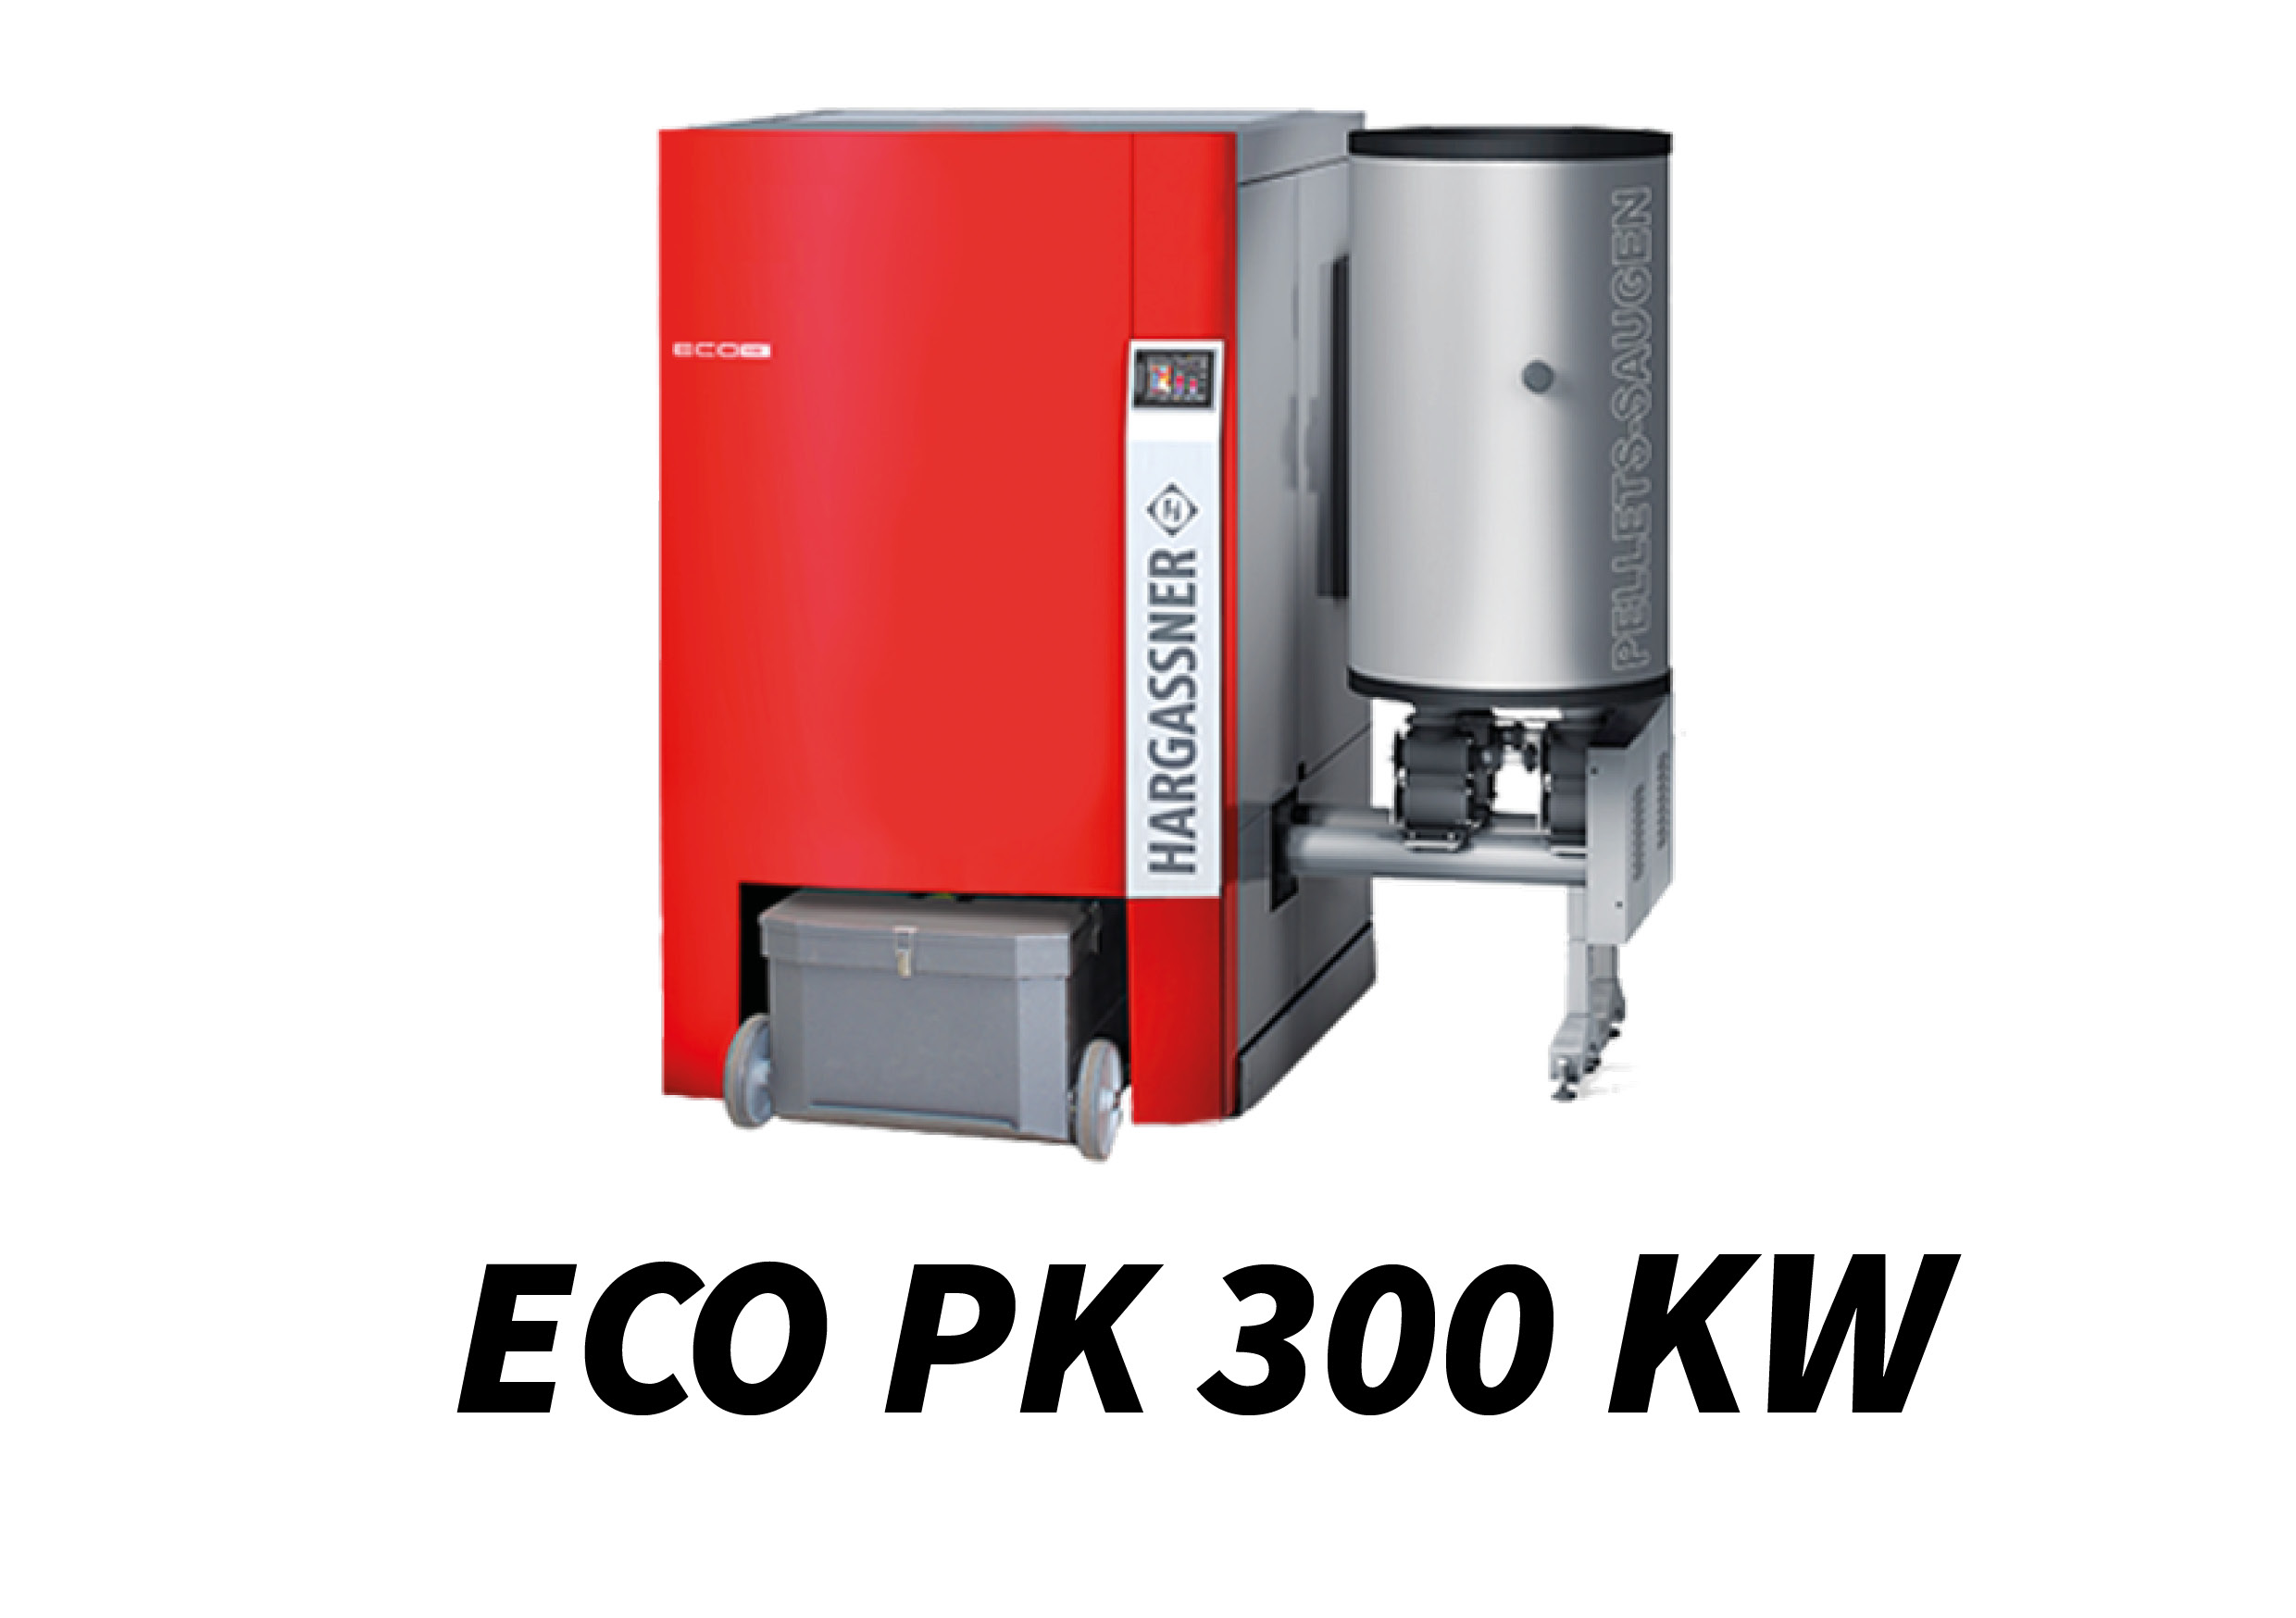 ECO PK 300 kW